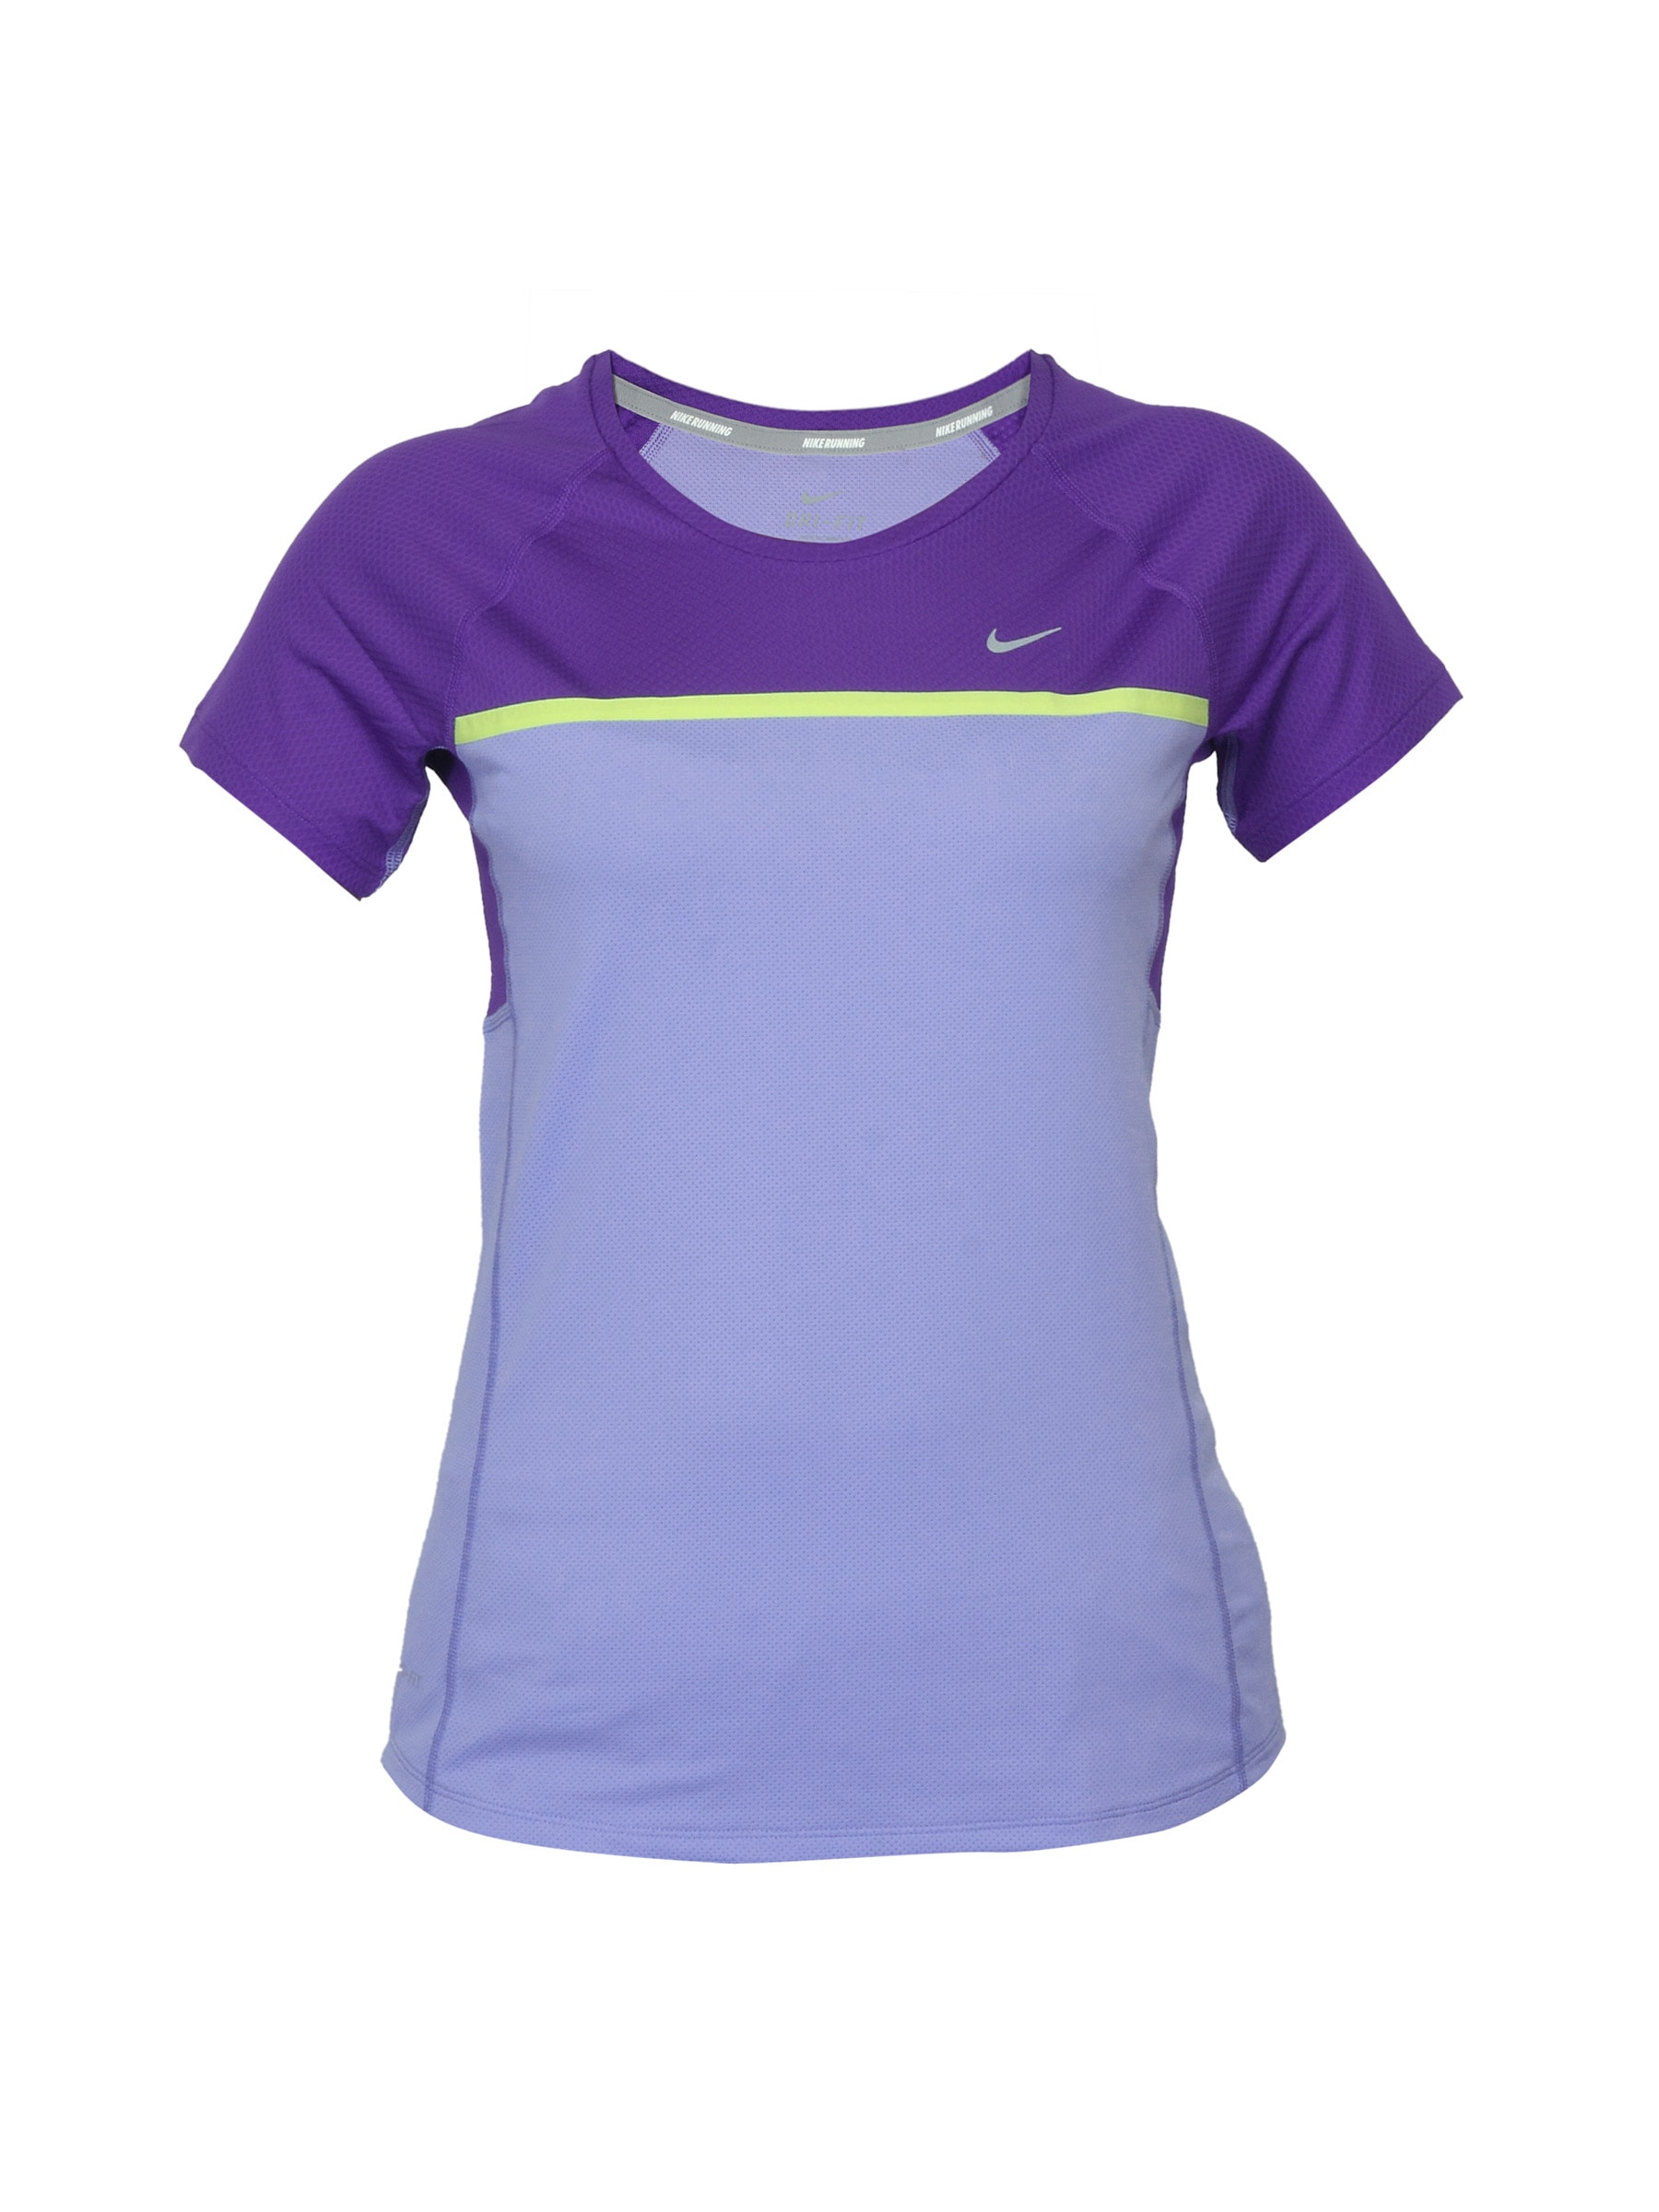 Nike Women Sphere Purple T-shirt